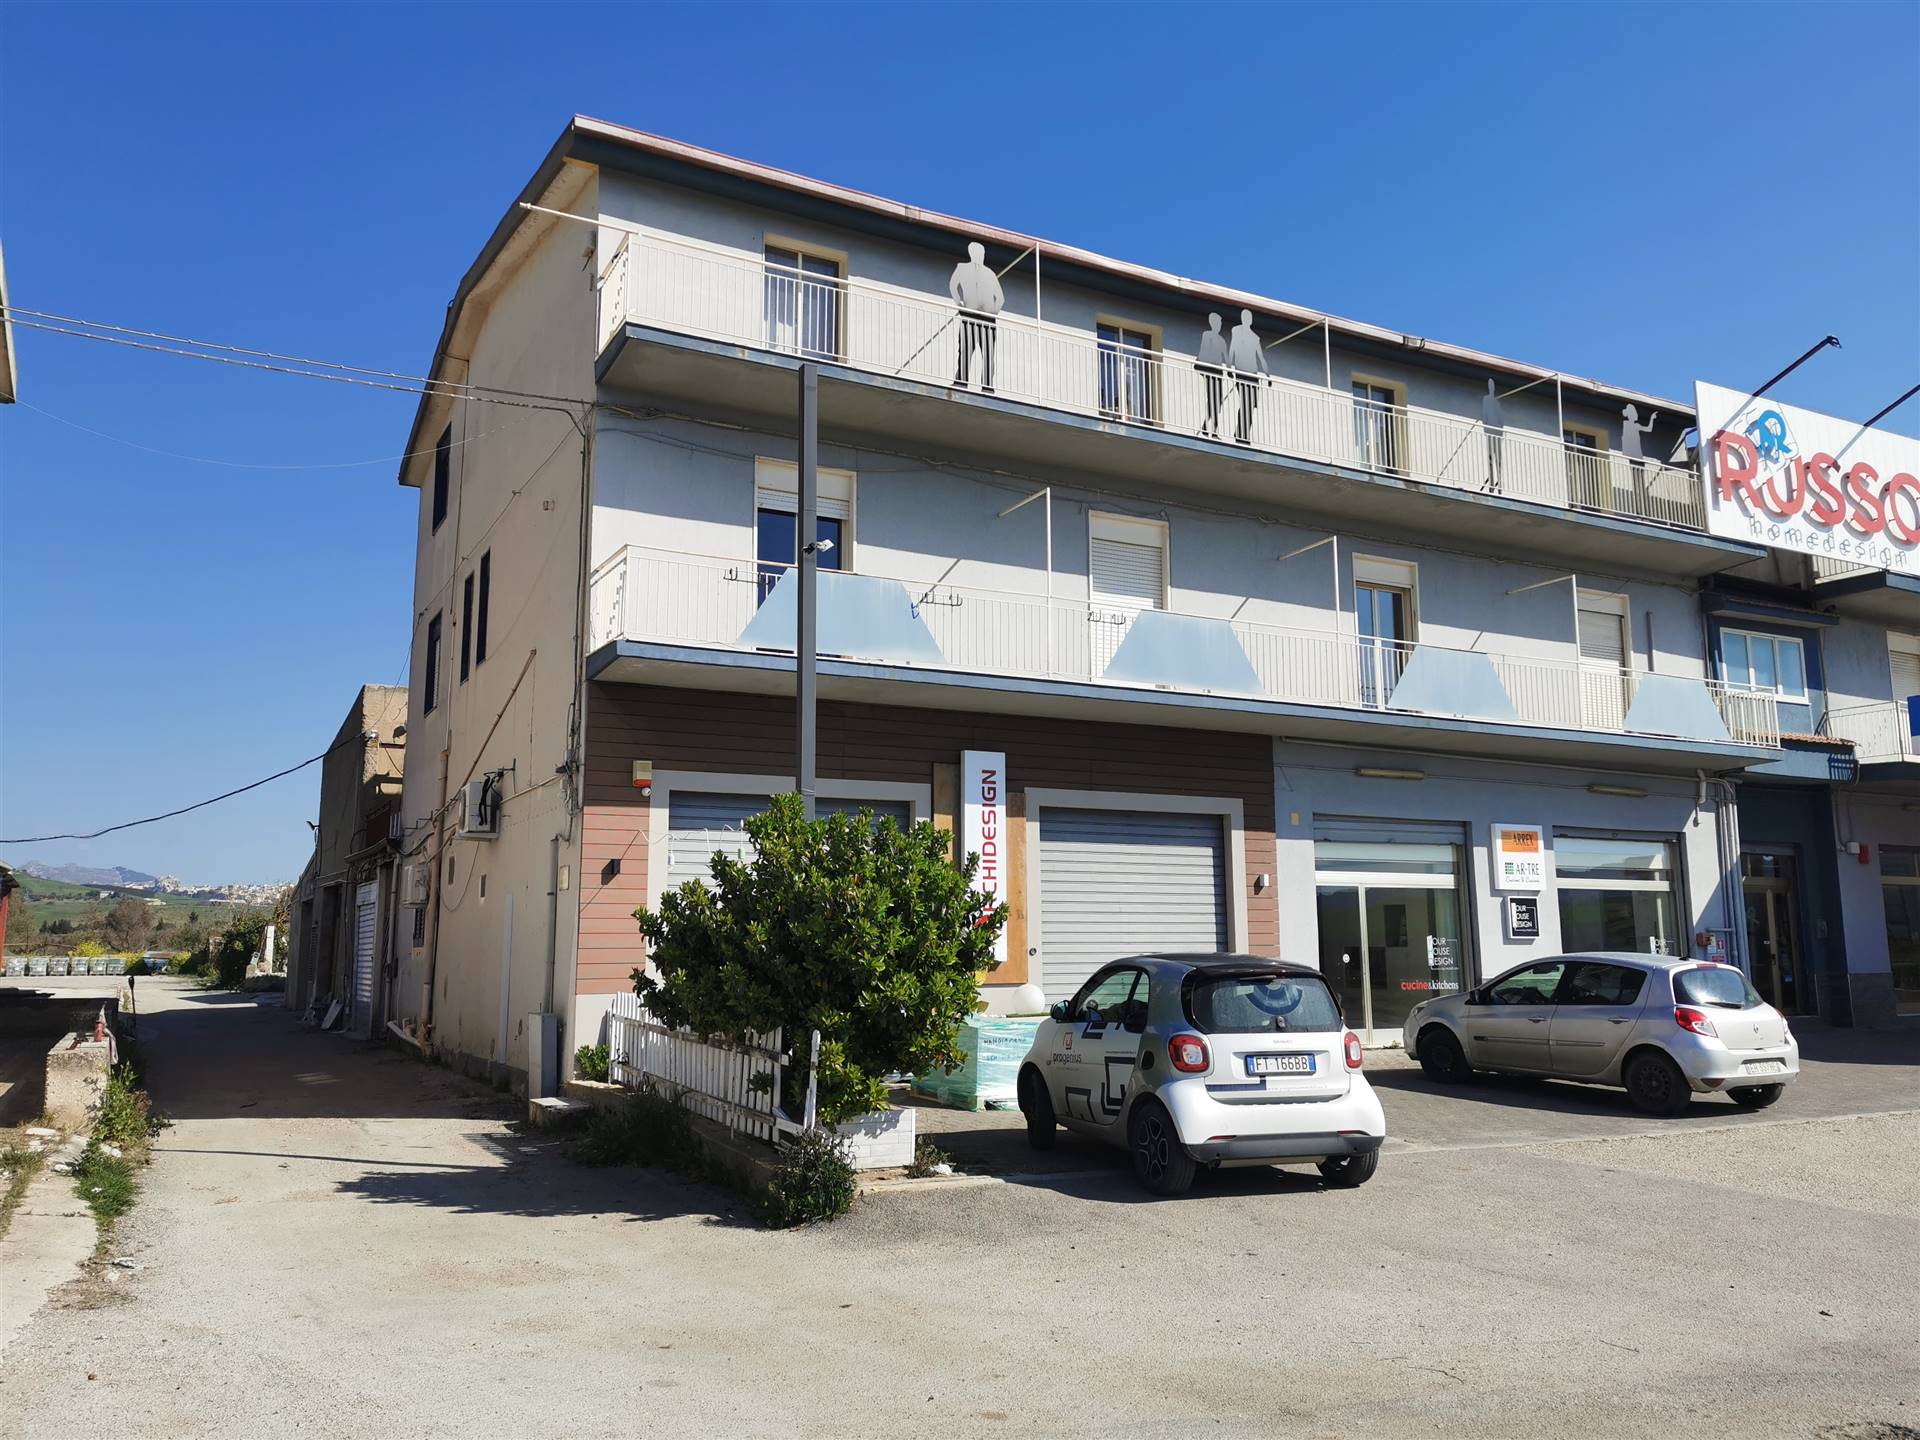 Appartamento in vendita a Joppolo Giancaxio, 4 locali, prezzo € 80.000 | PortaleAgenzieImmobiliari.it